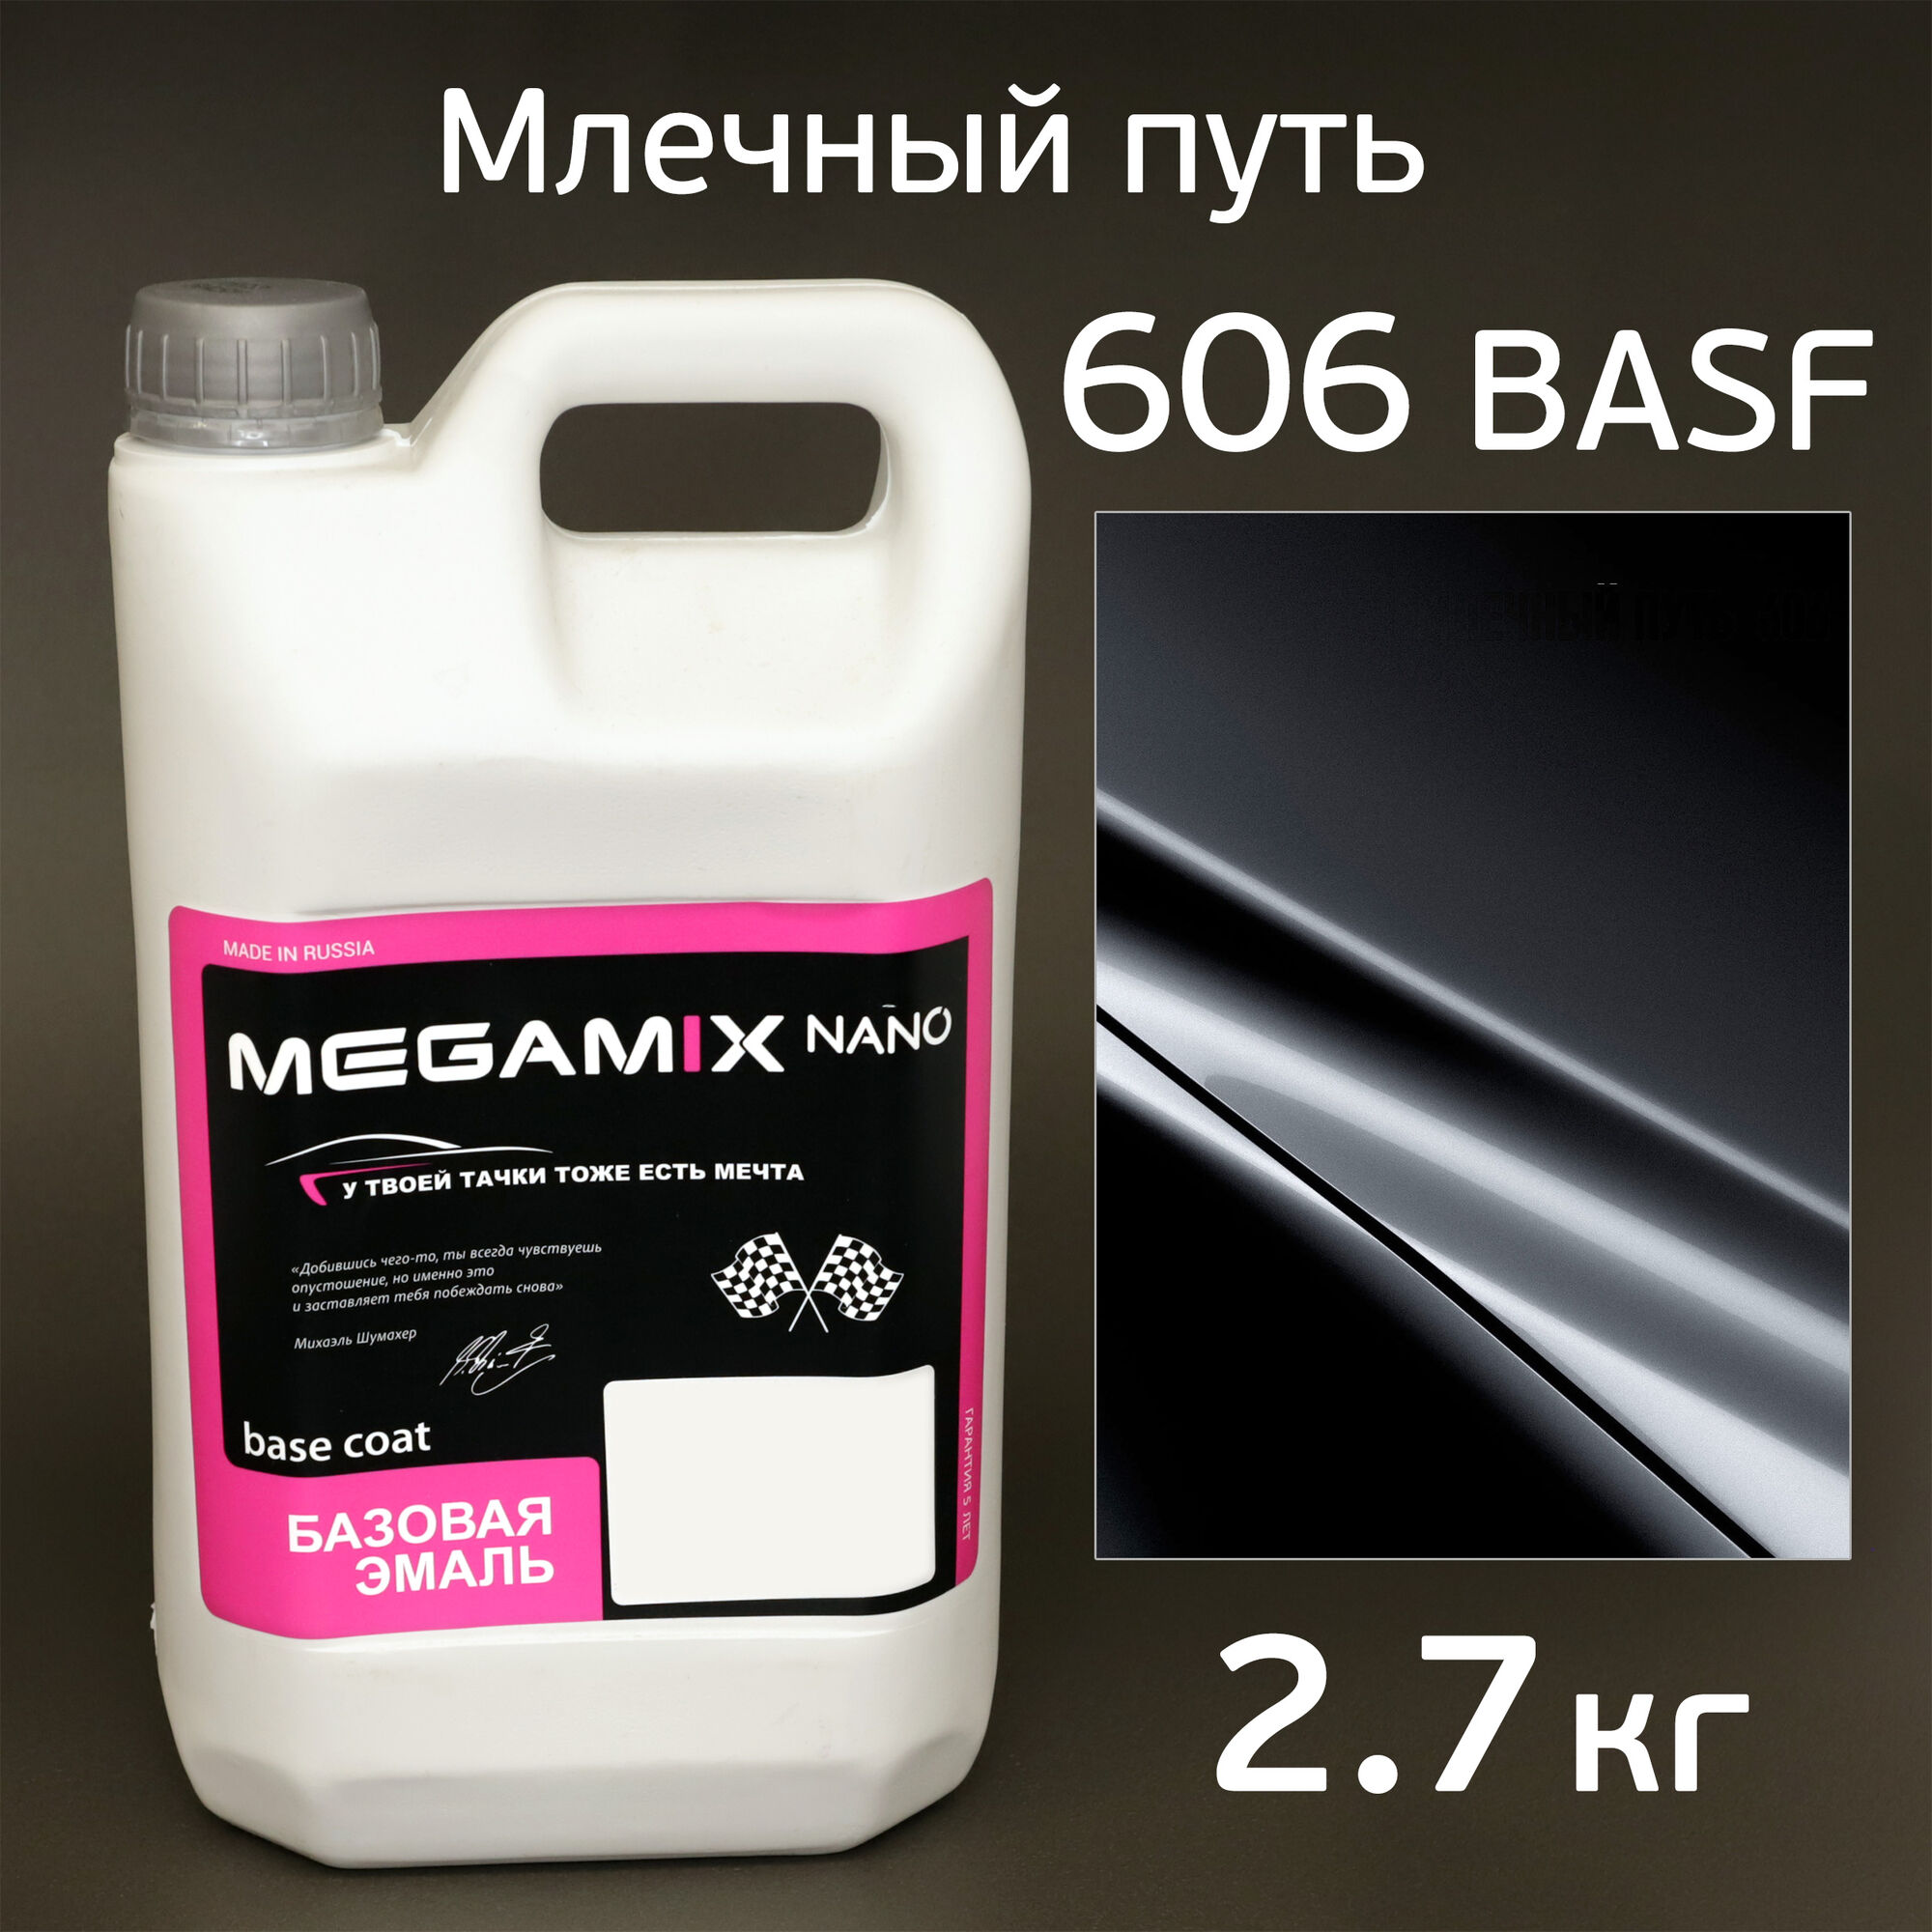 Автоэмаль MegaMIX (2.7кг) Lada 606 BASF Млечный Путь, металлик, базисная эмаль под лак